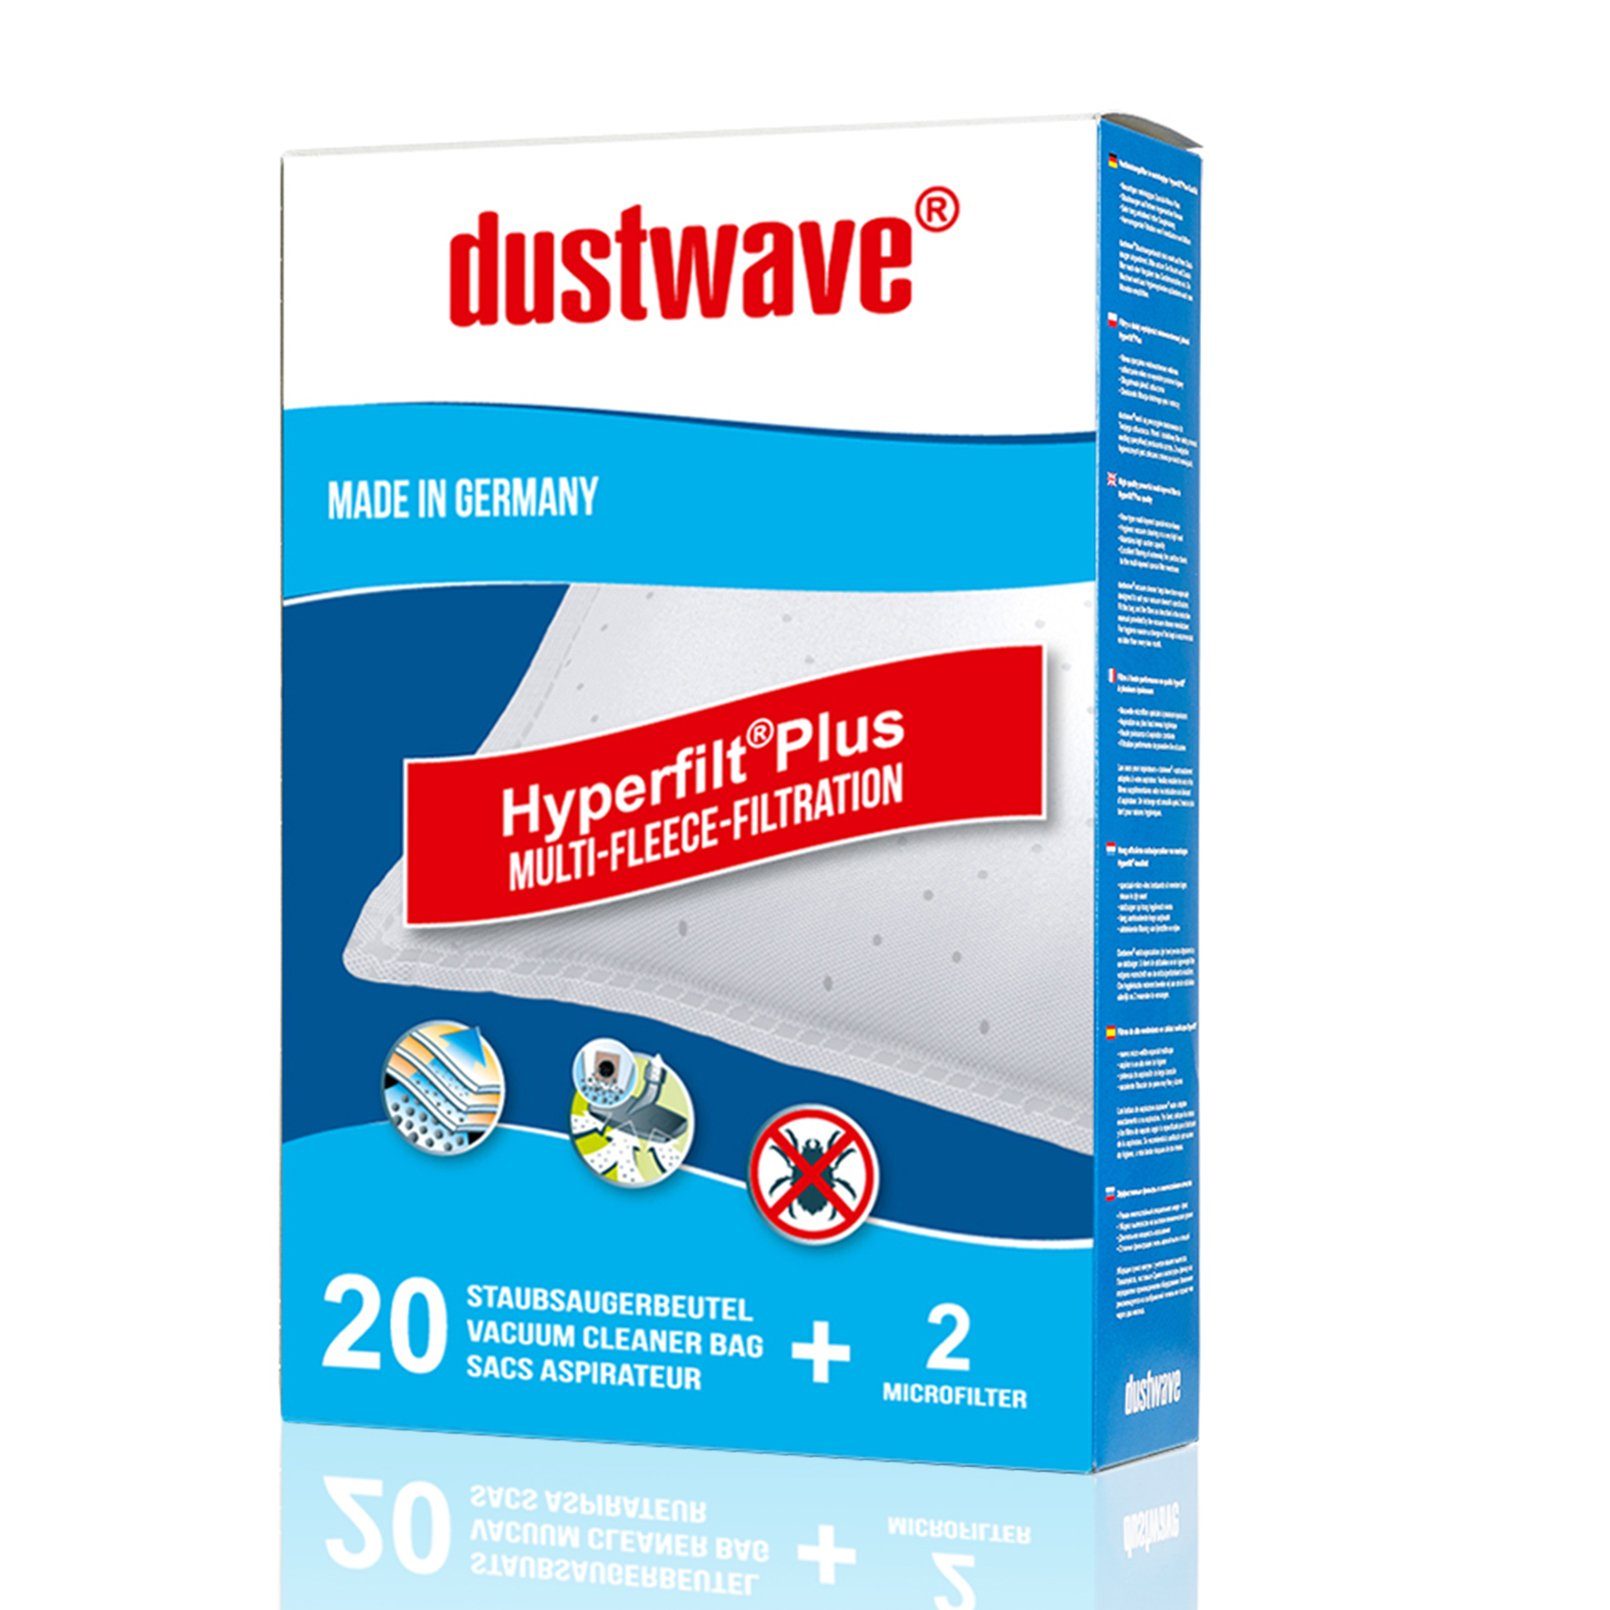 Dustwave Staubsaugerbeutel Megapack, passend für Base BA 1201, 20 St., Megapack, 20 Staubsaugerbeutel + 2 Hepa-Filter (ca. 15x15cm - zuschneidbar)